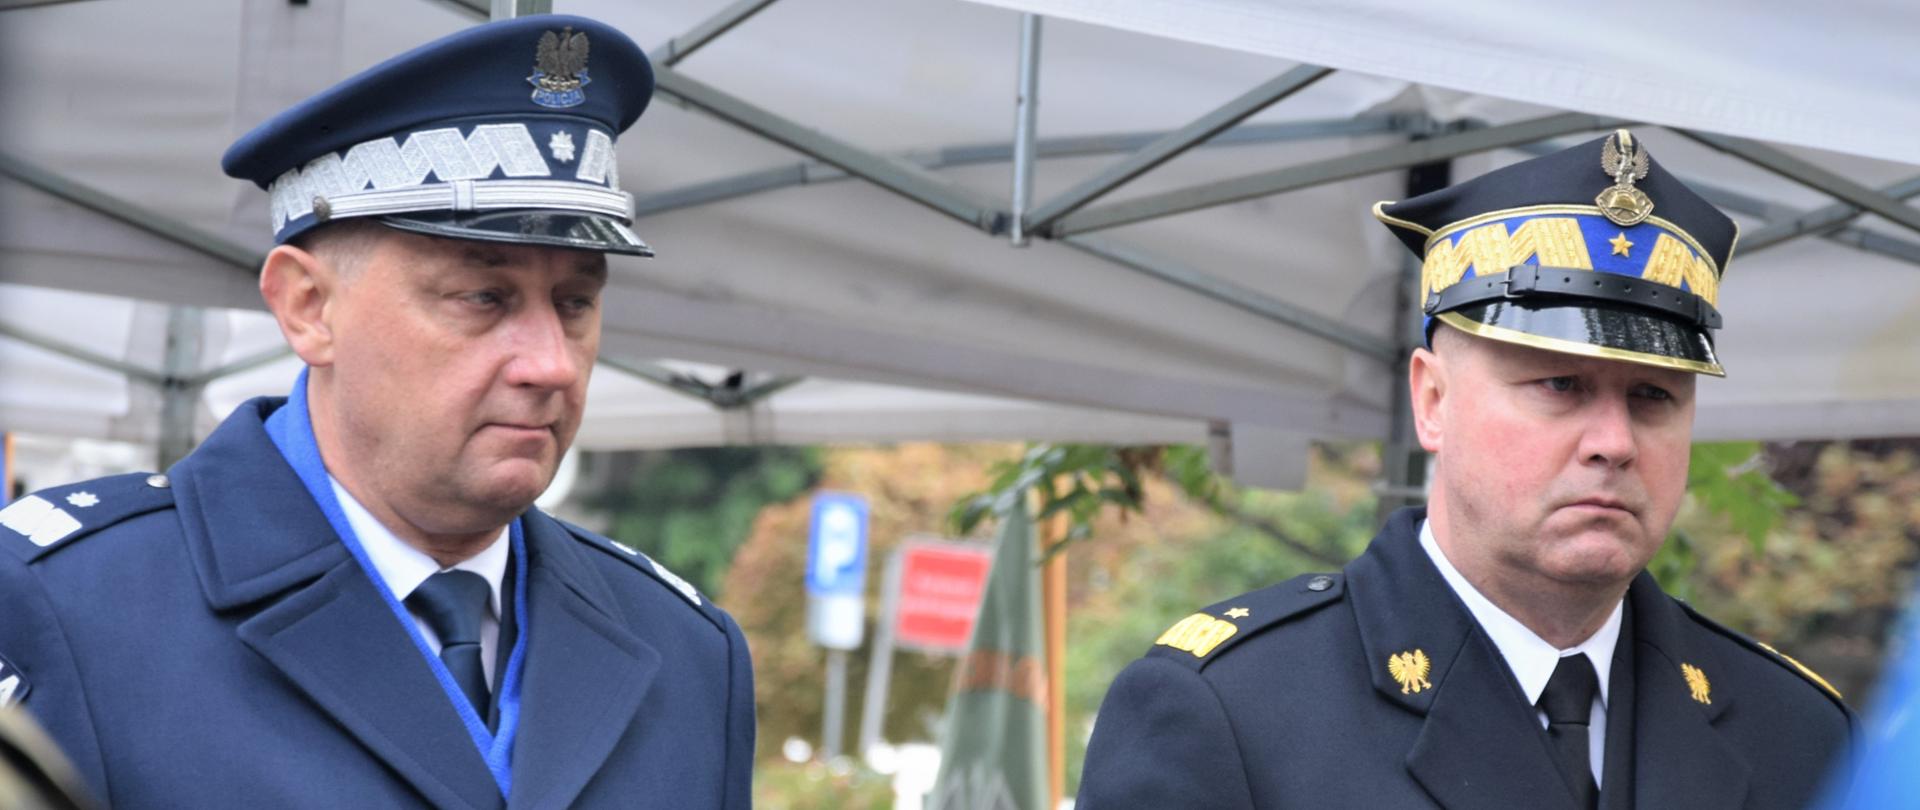 dwóch mężczyzn w mundurach stoi na baczność, mężczyzna z lewej strony to policjant, mężczyzna z prawej to strażak